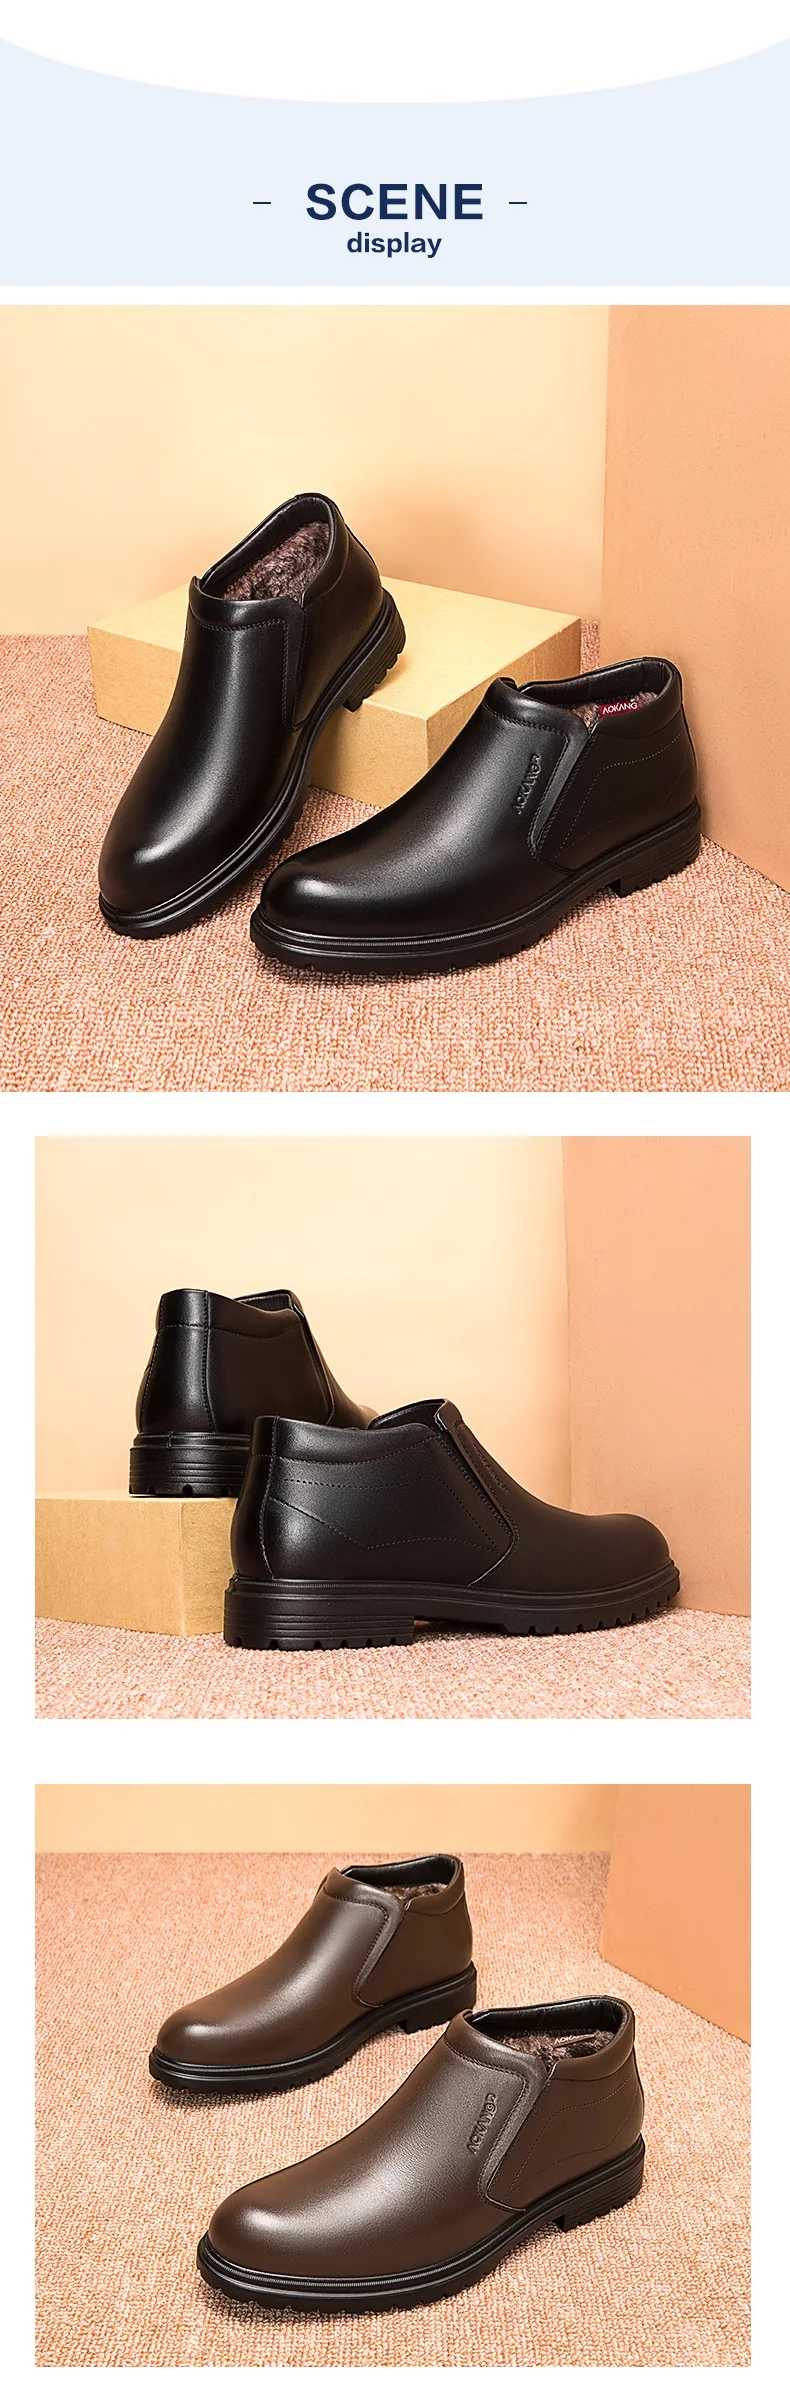 AOKANG/ г.; зимние кожаные ботинки; Мужские модельные туфли высокого качества; мужские Ботильоны; уличные рабочие ботинки в винтажном стиле; мужская обувь